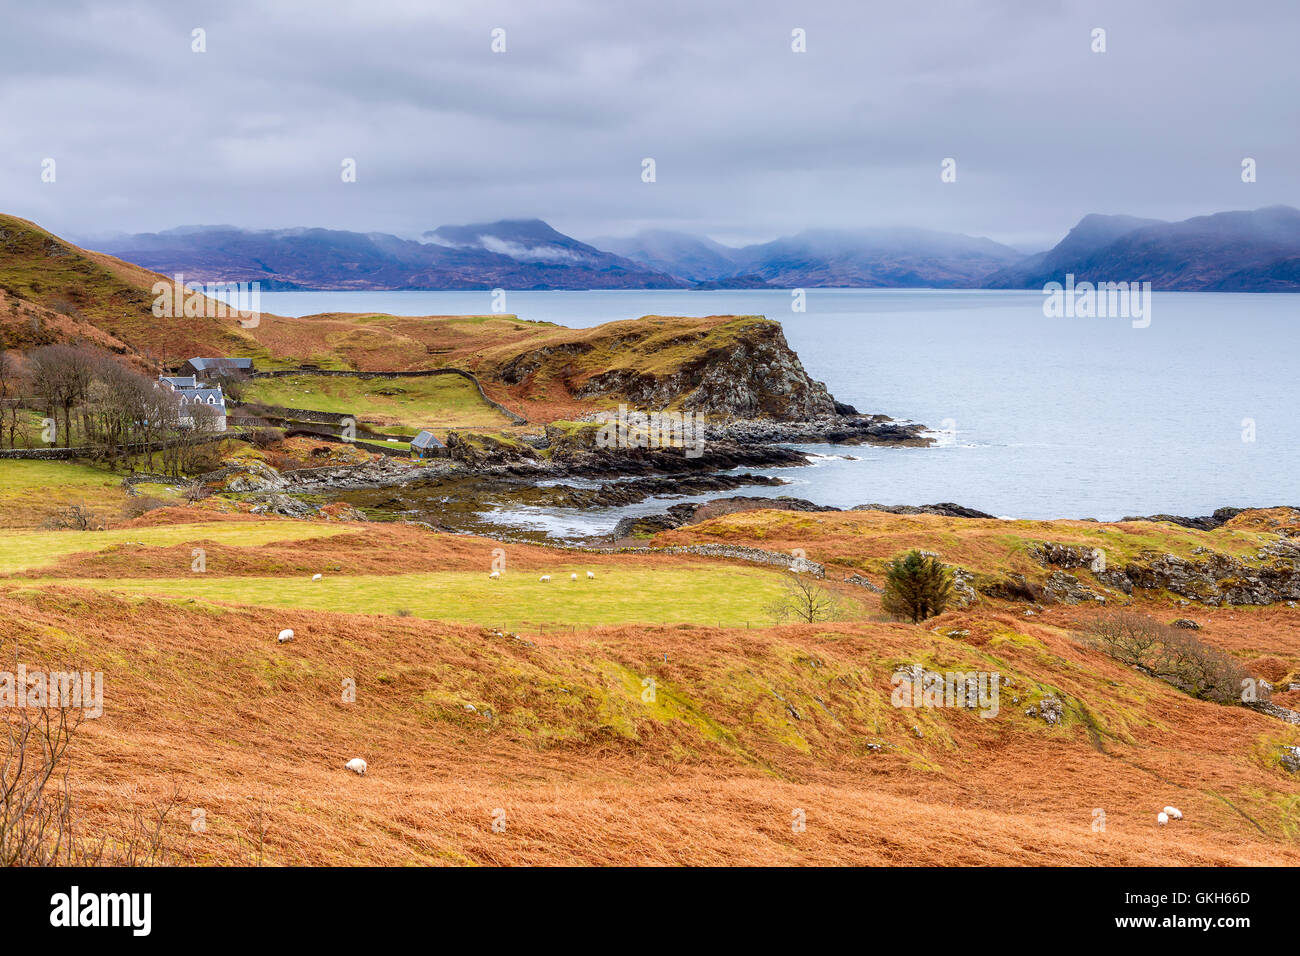 Sound of Sleat, Isle of Skye, Highland, Scotland, United Kingdom, Europe. Stock Photo